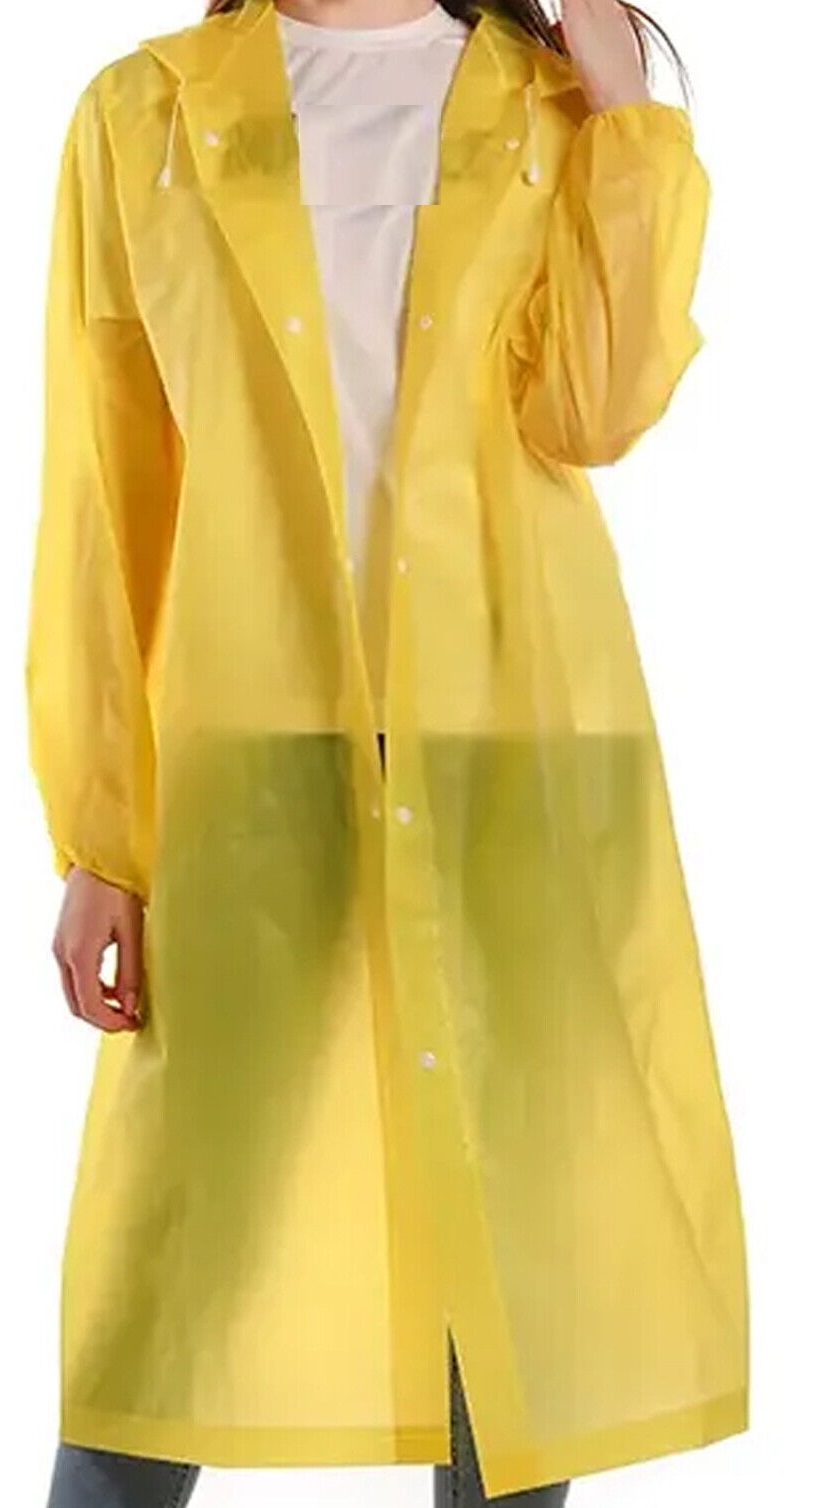 Yellow Large Travel Raincoat Rain Jacket